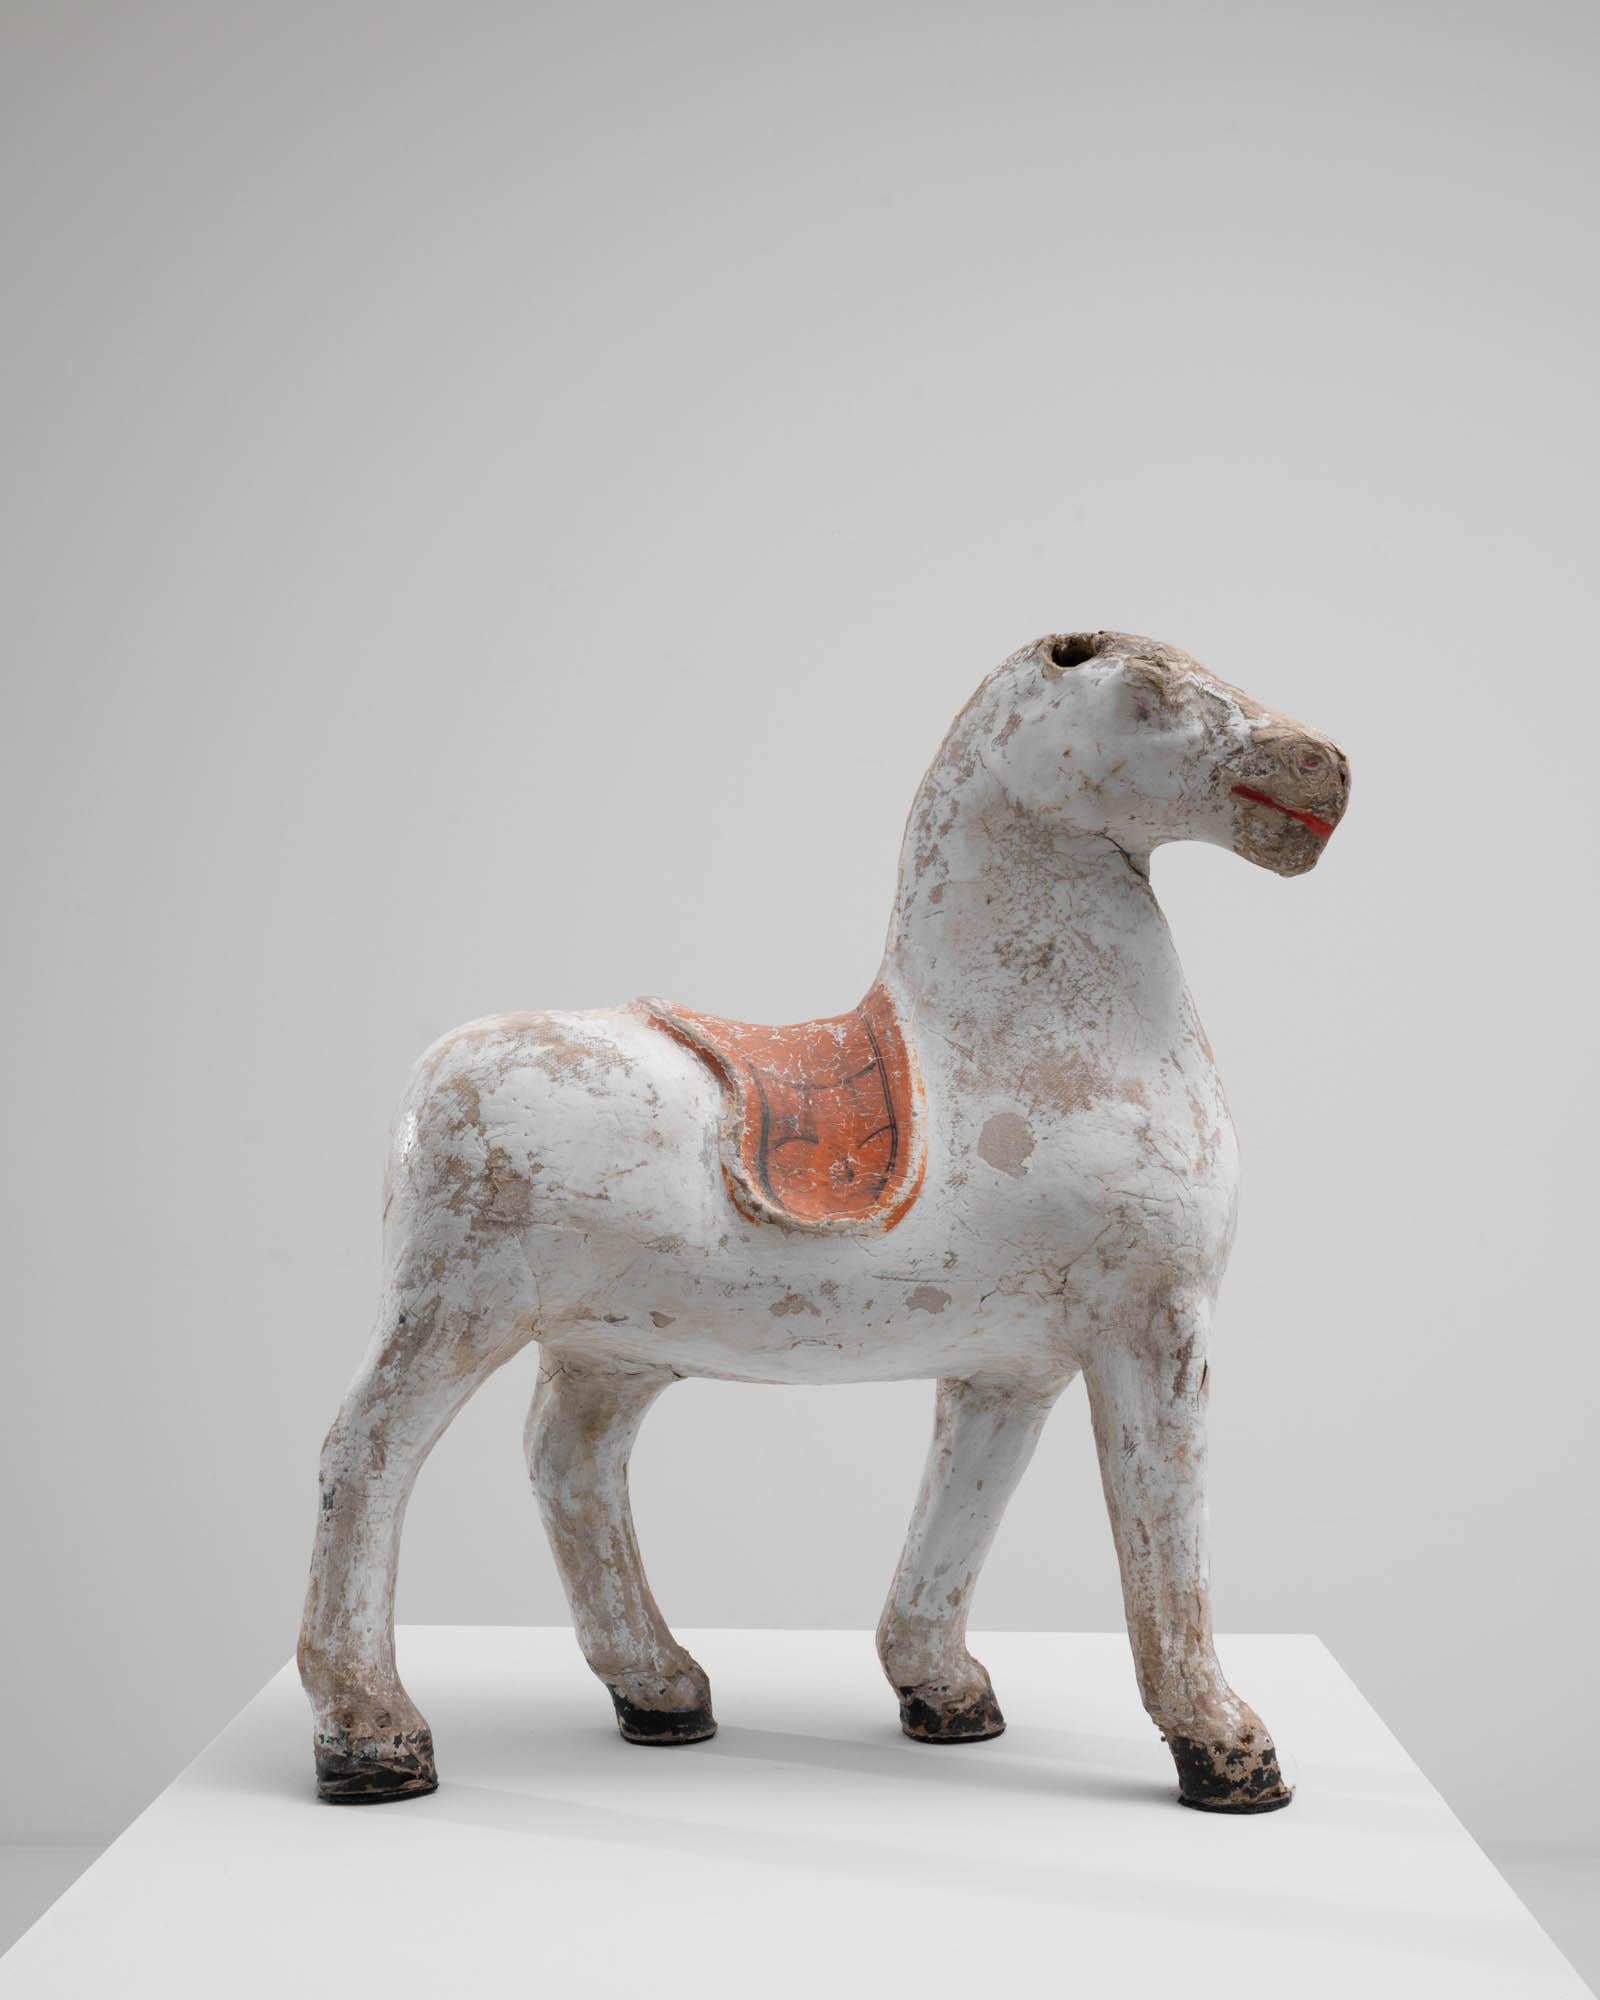 Dekorative Skulptur eines Pferdes, hergestellt in Frankreich um 1900. Auf diesem schönen, patinierten Pferd ruht ein einfacher, gekrönter Sattel. Die leuchtend scharlachrote Farbe im lächelnden Maul dieses königlichen Pferdes verleiht ihm einen